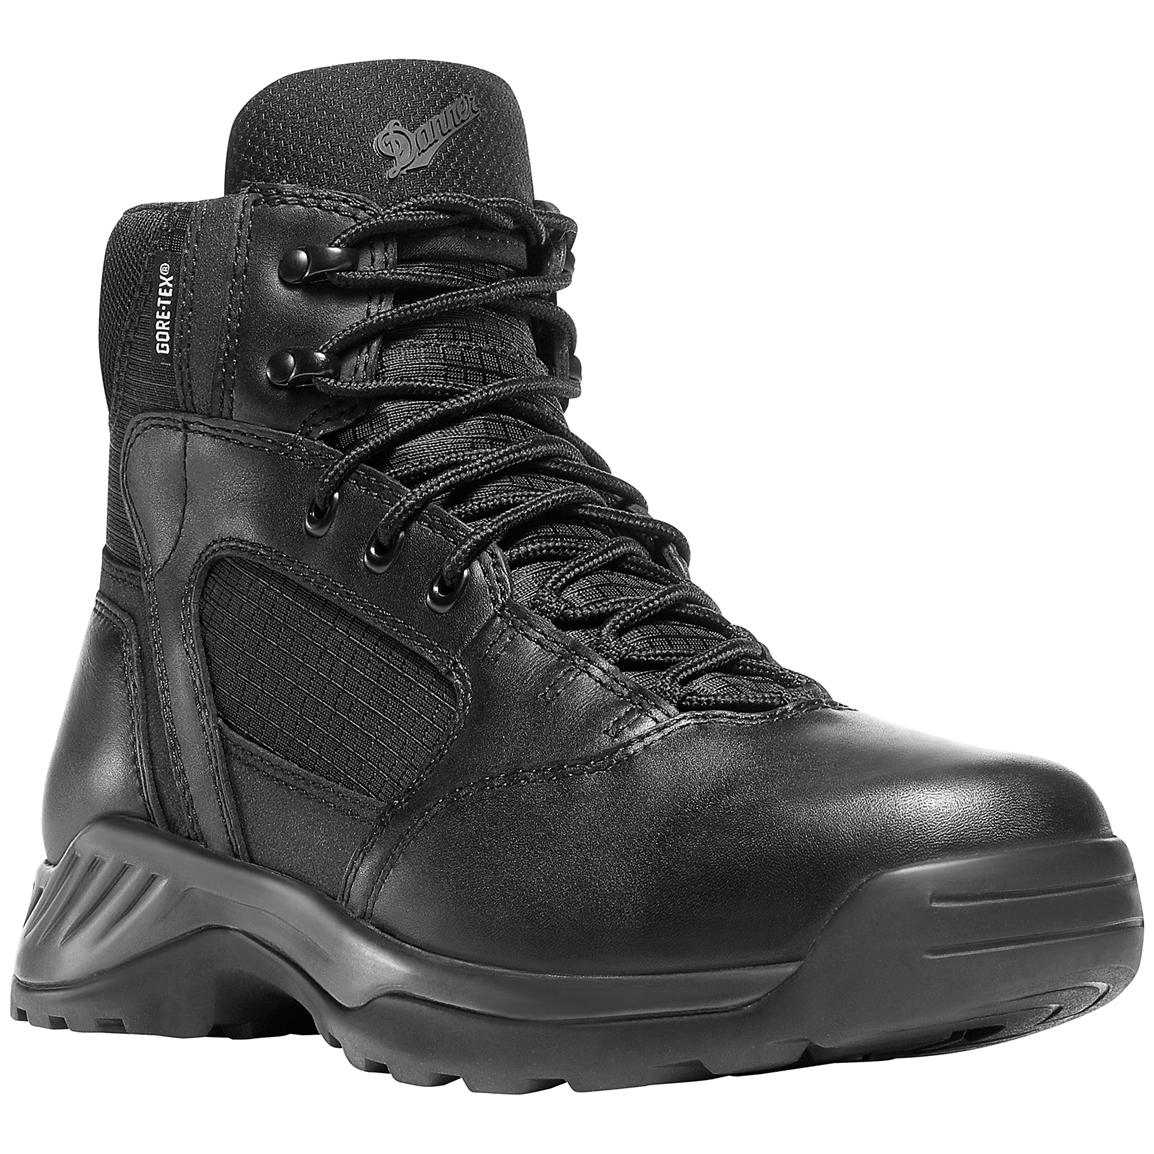 Men's 6 inch Danner® Kinetic Side-zip GTX® Uniform Boots, Black